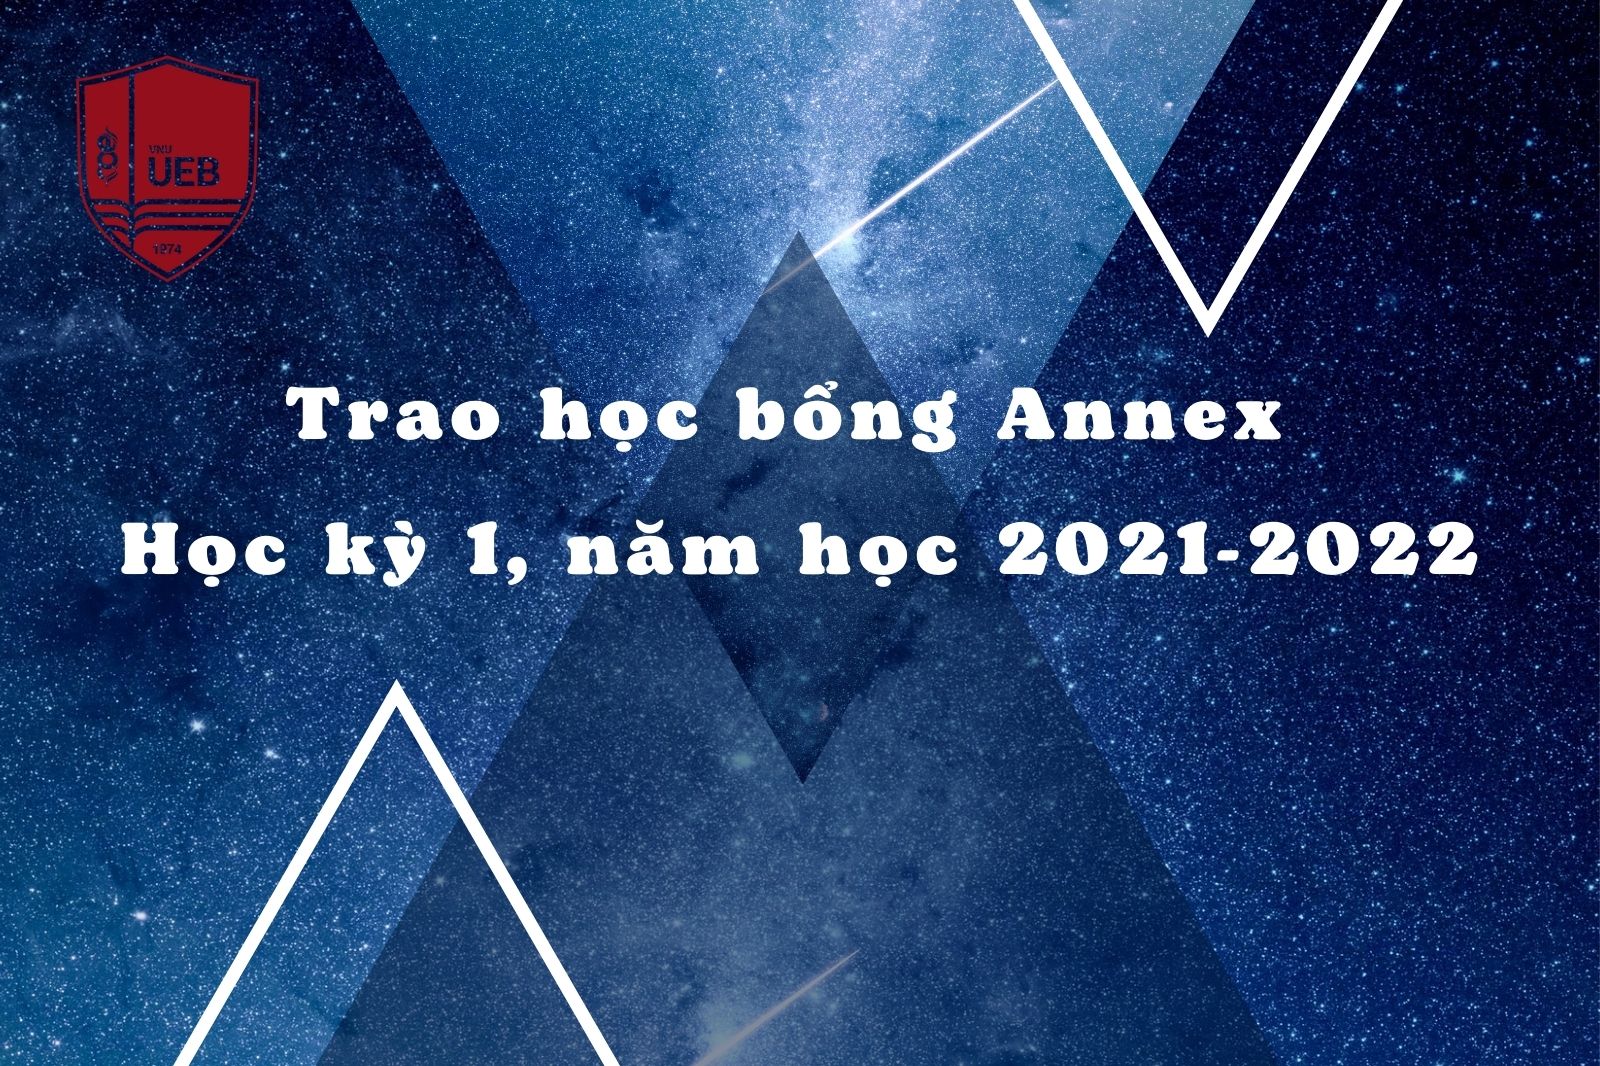 Trao học bổng Annex học kỳ 1, năm học 2021 - 2022